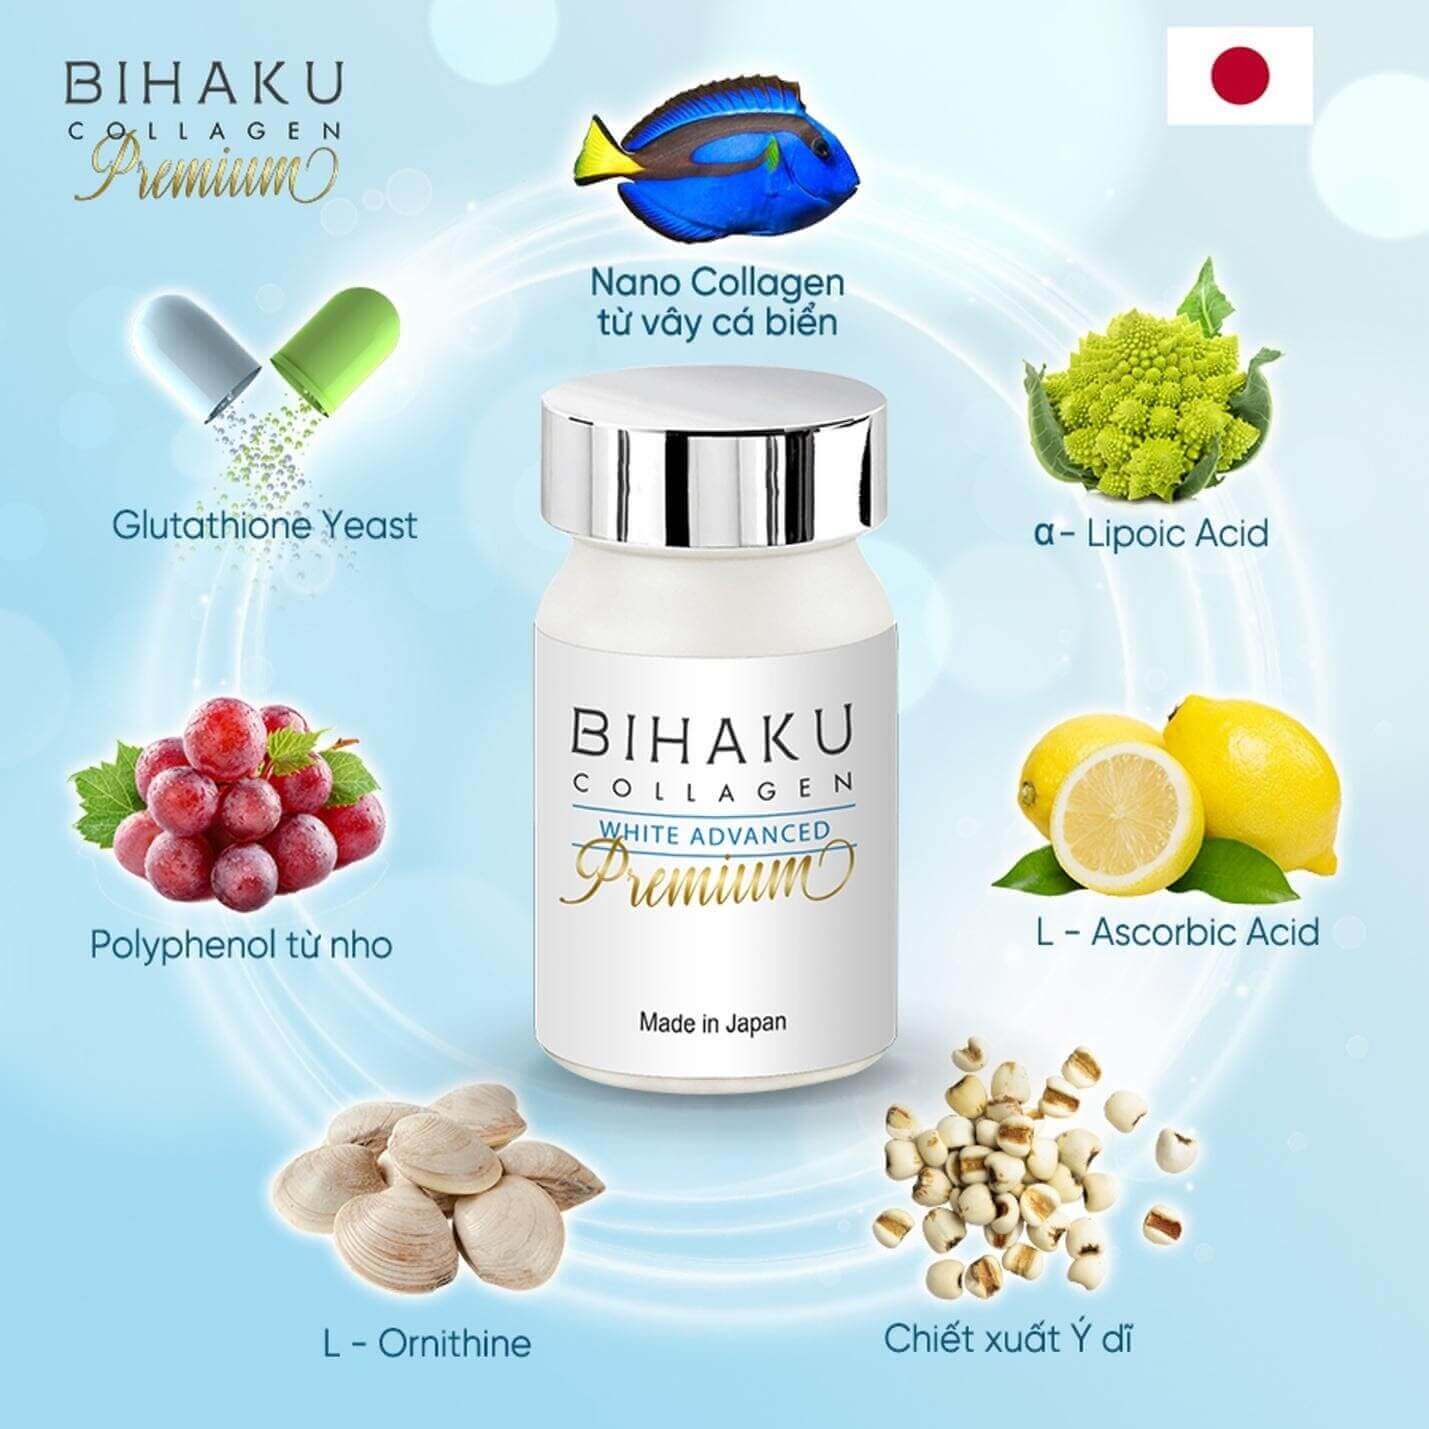 Các thành phần đắt có trong Bihaku Collagen Premium